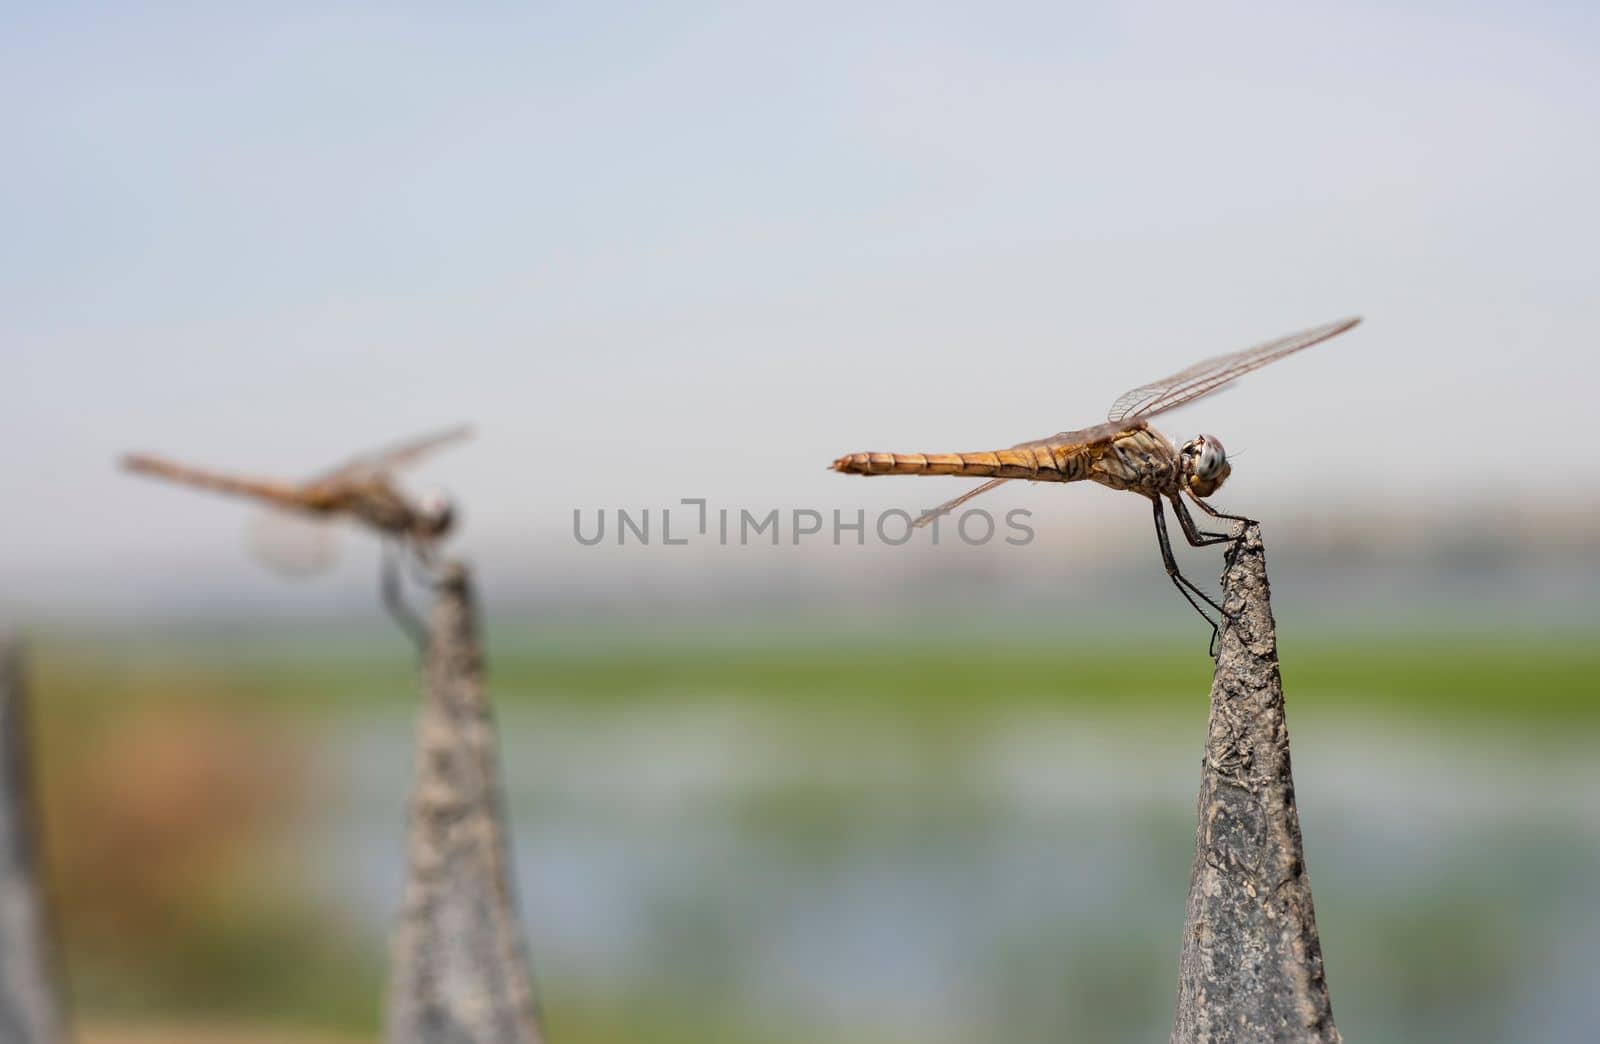 Pair of wandering glider dragonflies on metal post by paulvinten